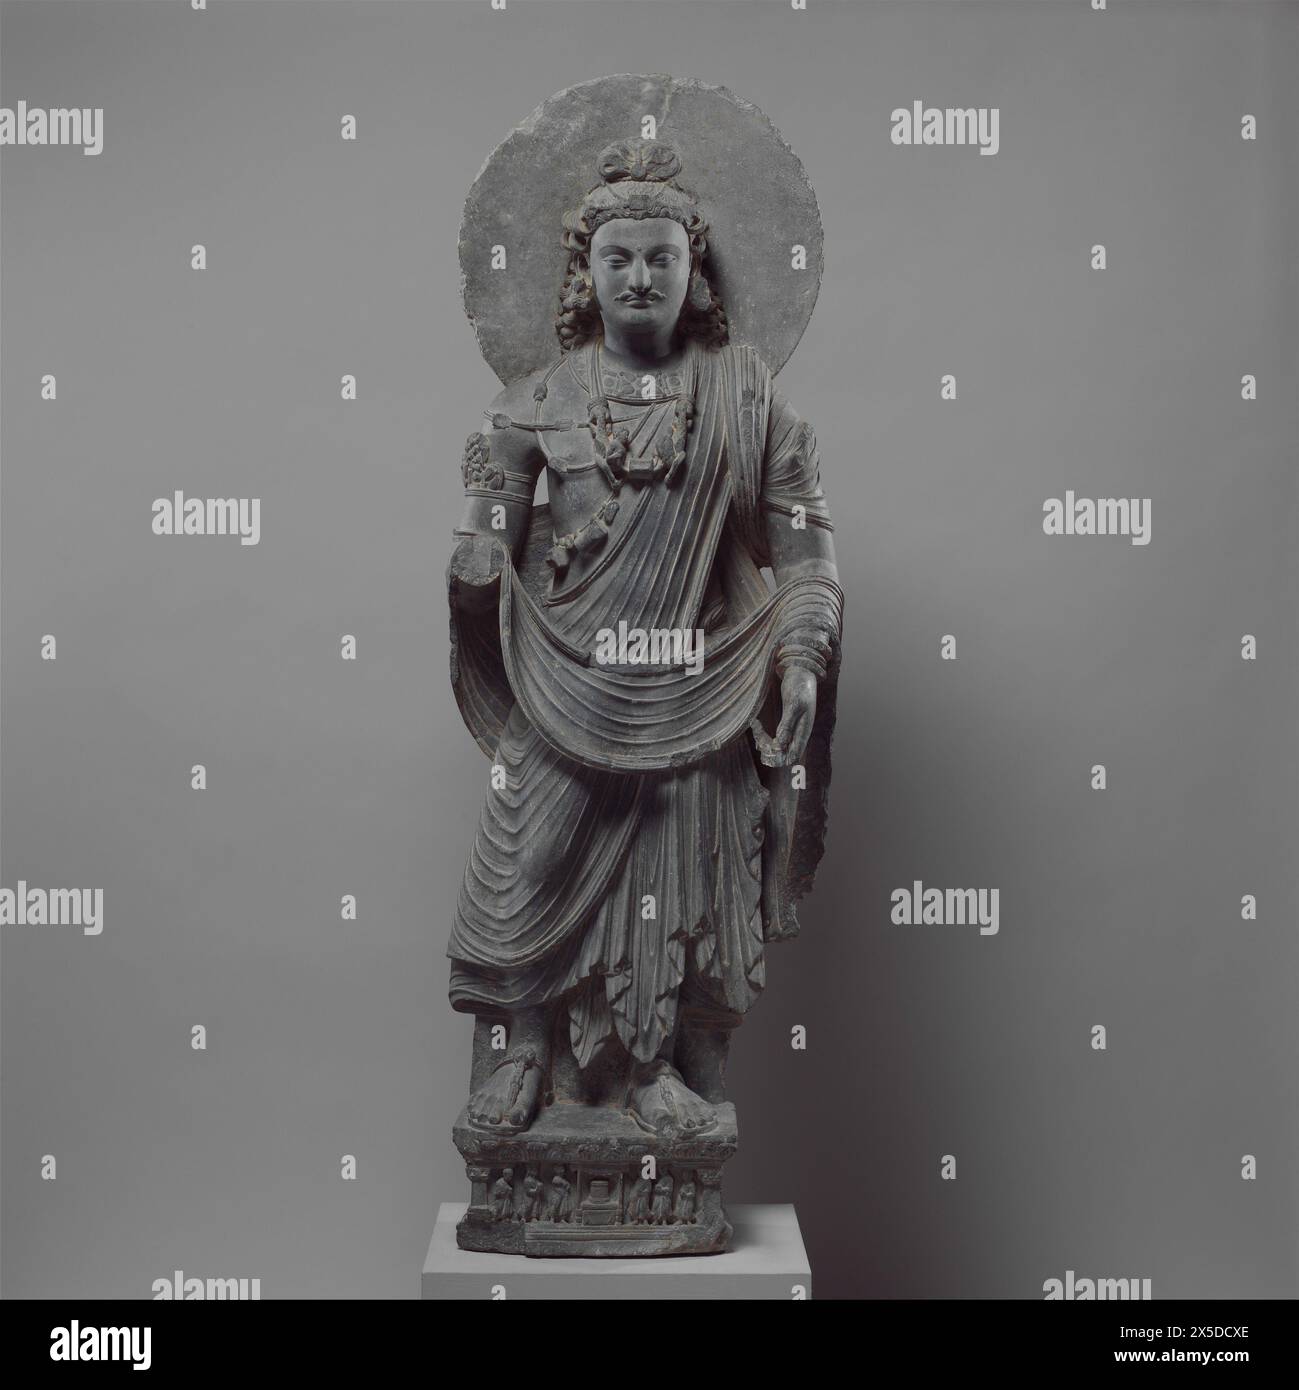 Pakistan: Bodhisattva Maiitreya oder der Buddha der Zukunft, Gandhara, 3. Jahrhundert. Metropolitan Museum of Art, New York. Gandhara ist bekannt für den unverwechselbaren Gandhara-Stil der buddhistischen Kunst, der sich aus einer Verschmelzung von griechischem, syrischem, persischem und indischem künstlerischem Einfluss entwickelte. Diese Entwicklung begann während der parthischen Zeit (50 v. Chr. – 75 v. Chr.). Der Gandharan-Stil blühte und erreichte seinen Höhepunkt während der Kushan-Zeit vom 1. Bis zum 5. Jahrhundert. Stockfoto